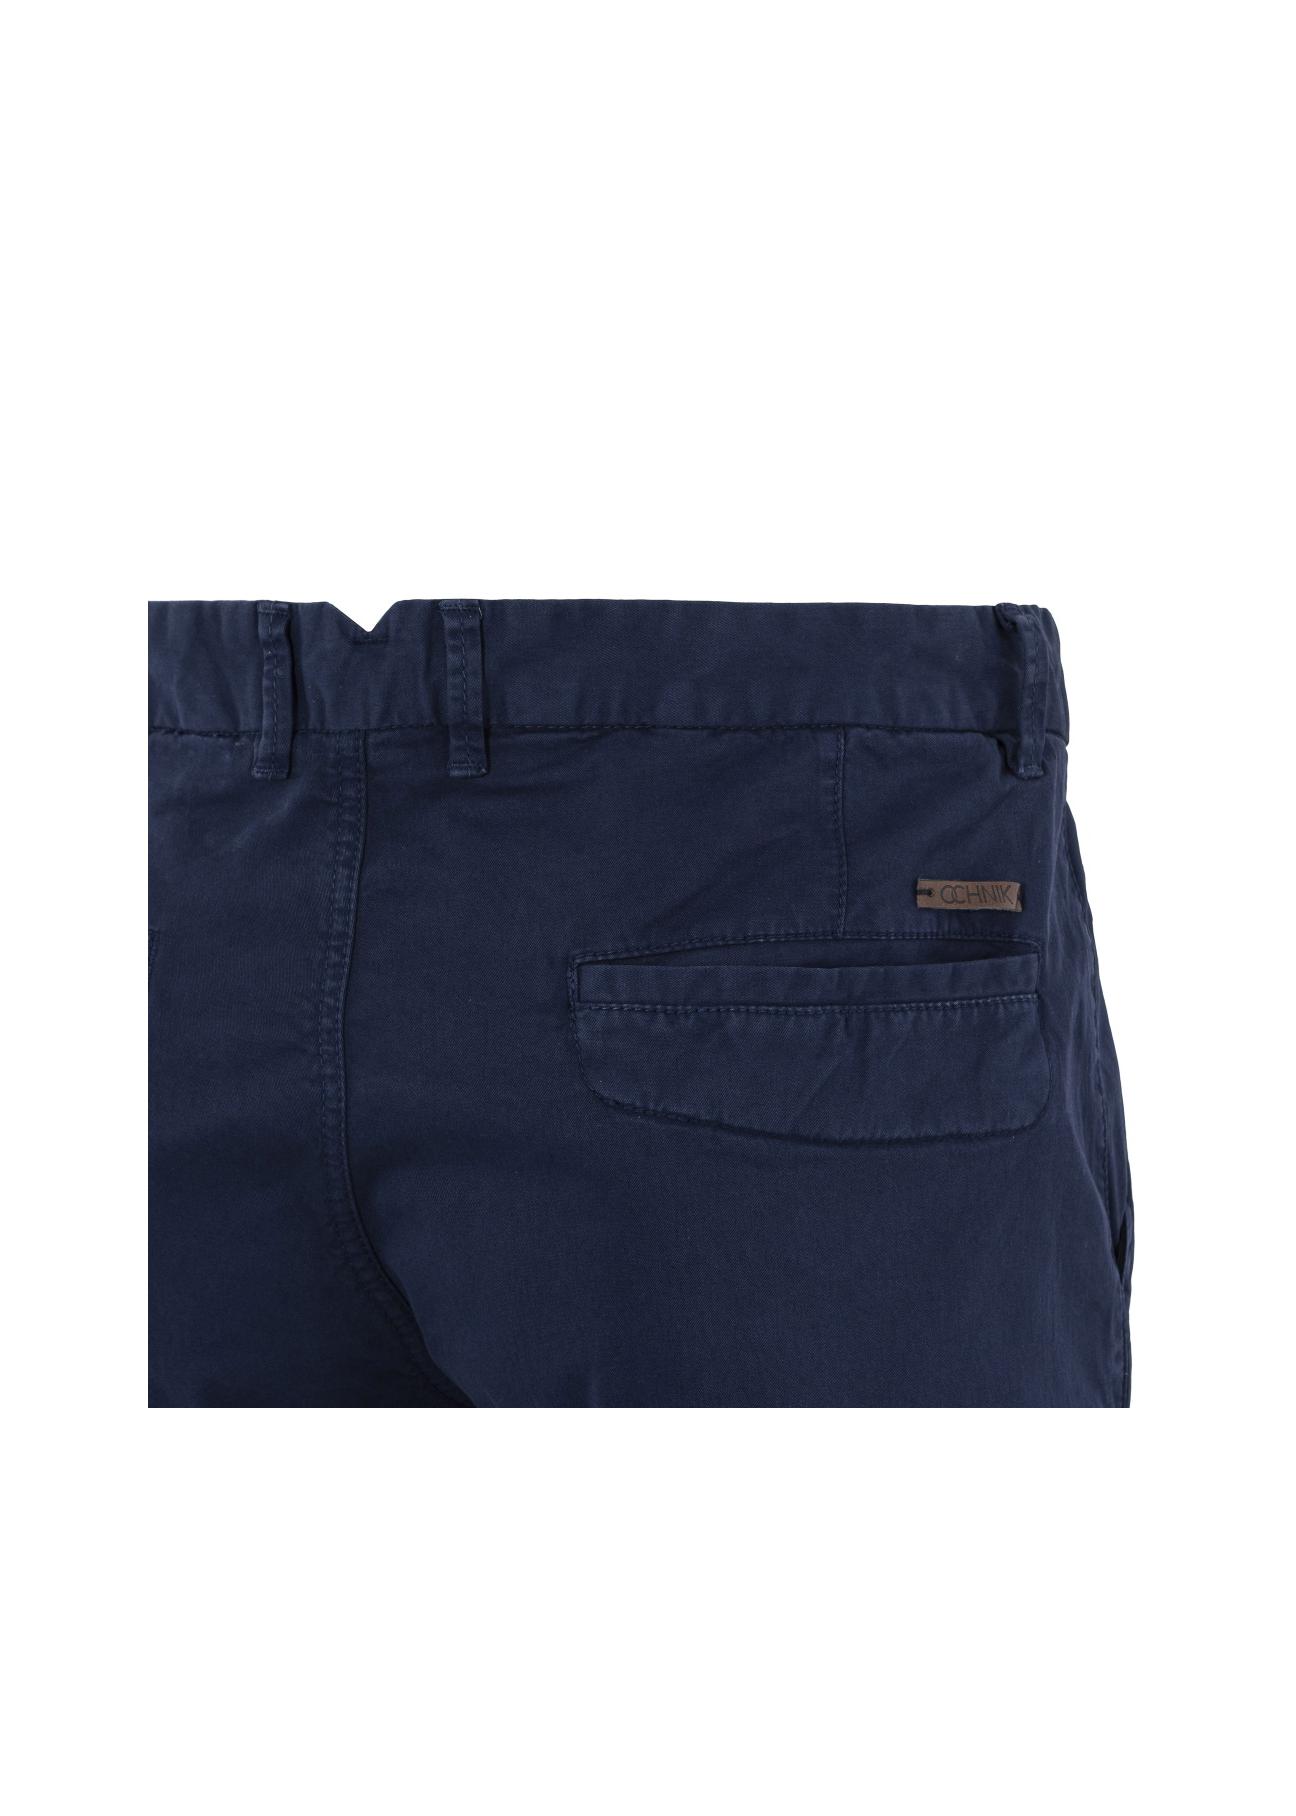 Spodnie męskie SPOMT-0053-69(W20)